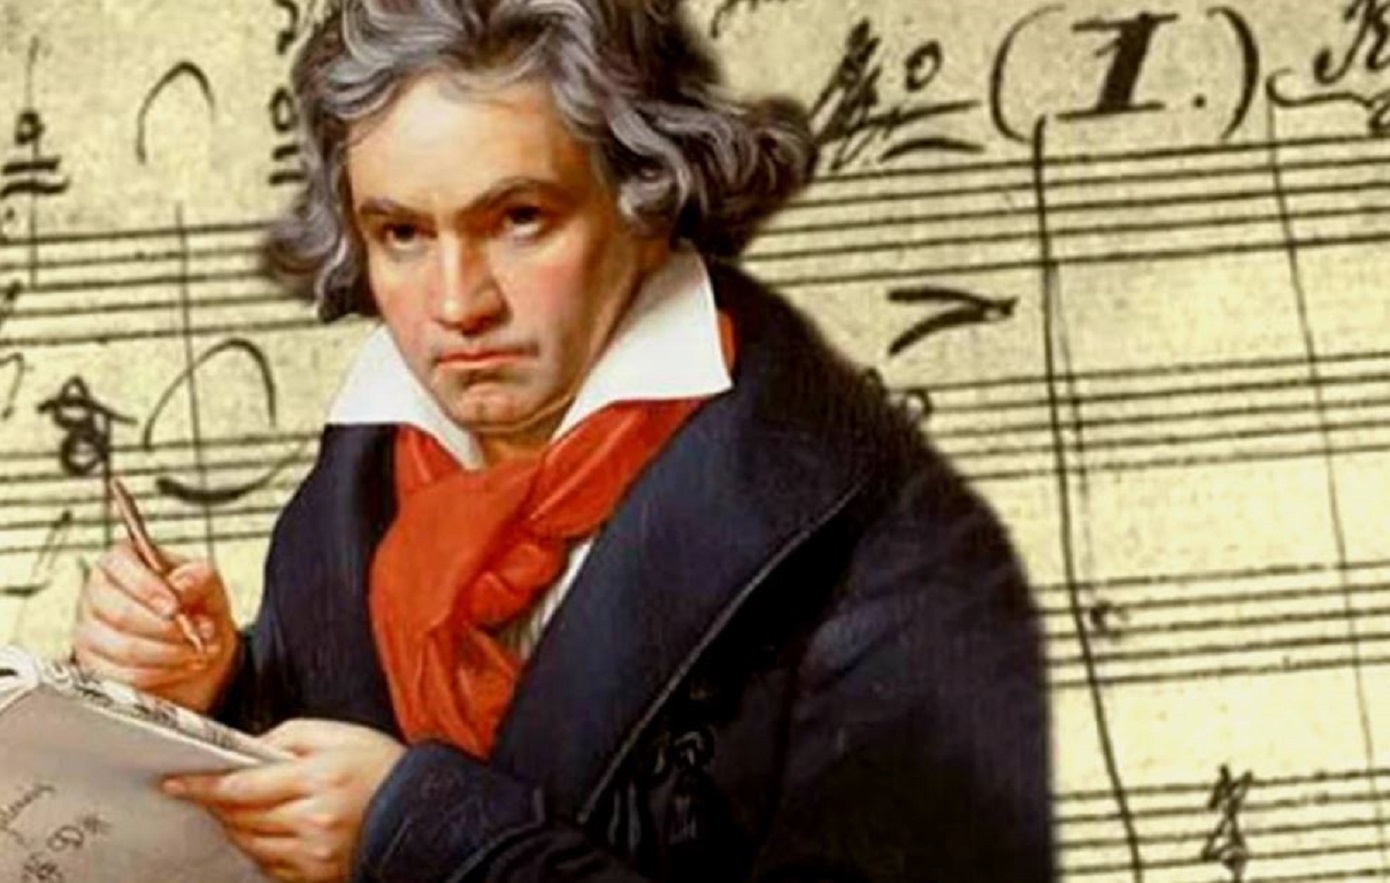 Επιστήμονες εξέτασαν τούφες του Μπετόβεν για να βρουν αν είχε κληρονομικό ταλέντο στη μουσική